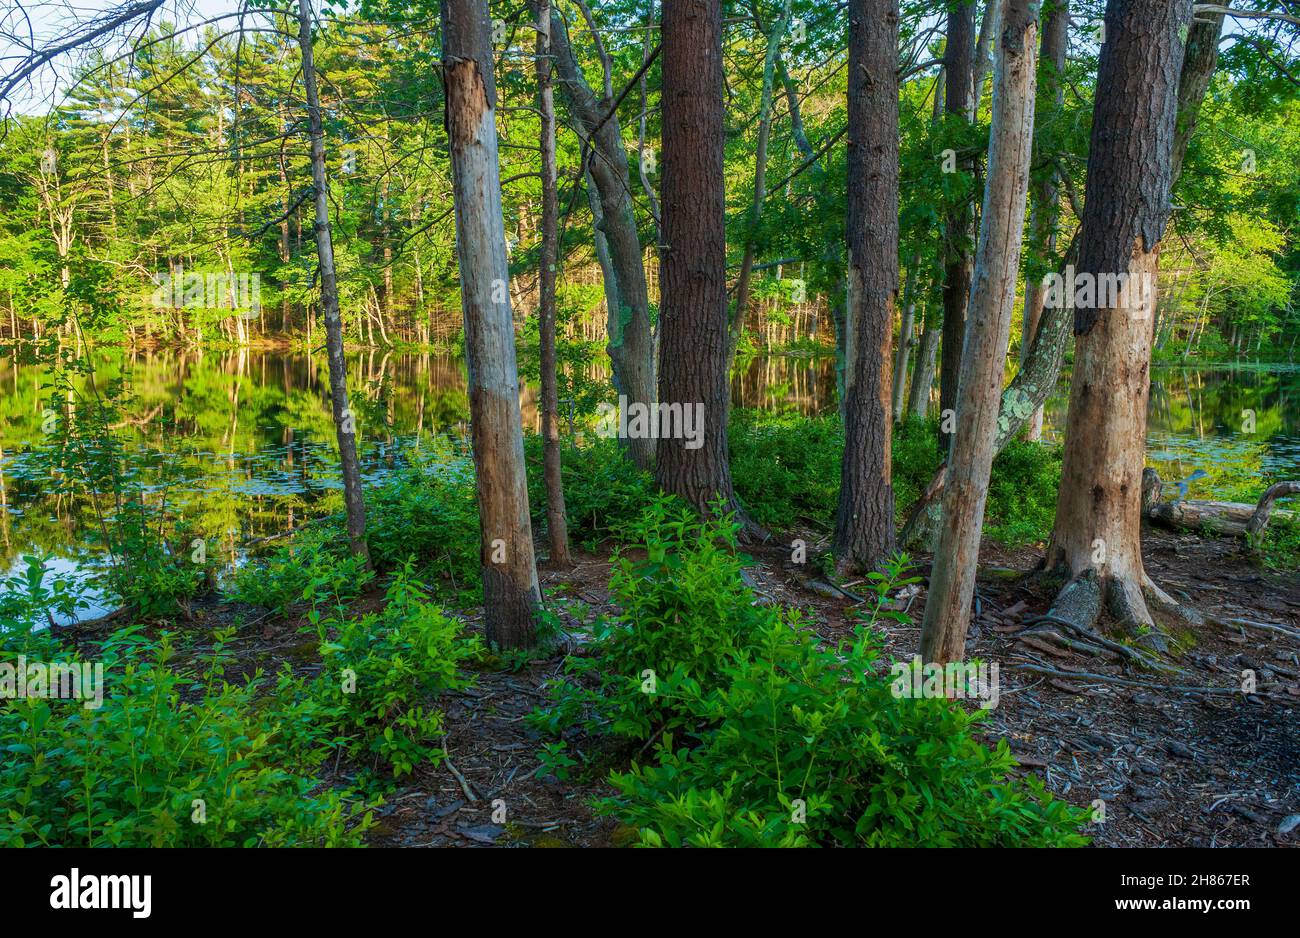 Haine von Bäumen und Schlangen am Ufer des Brackett Pond. In einem nördlichen Hartholz-Weißen Kiefernwald. Harold Parker State Forest, Andover, Massachusetts Stockfoto